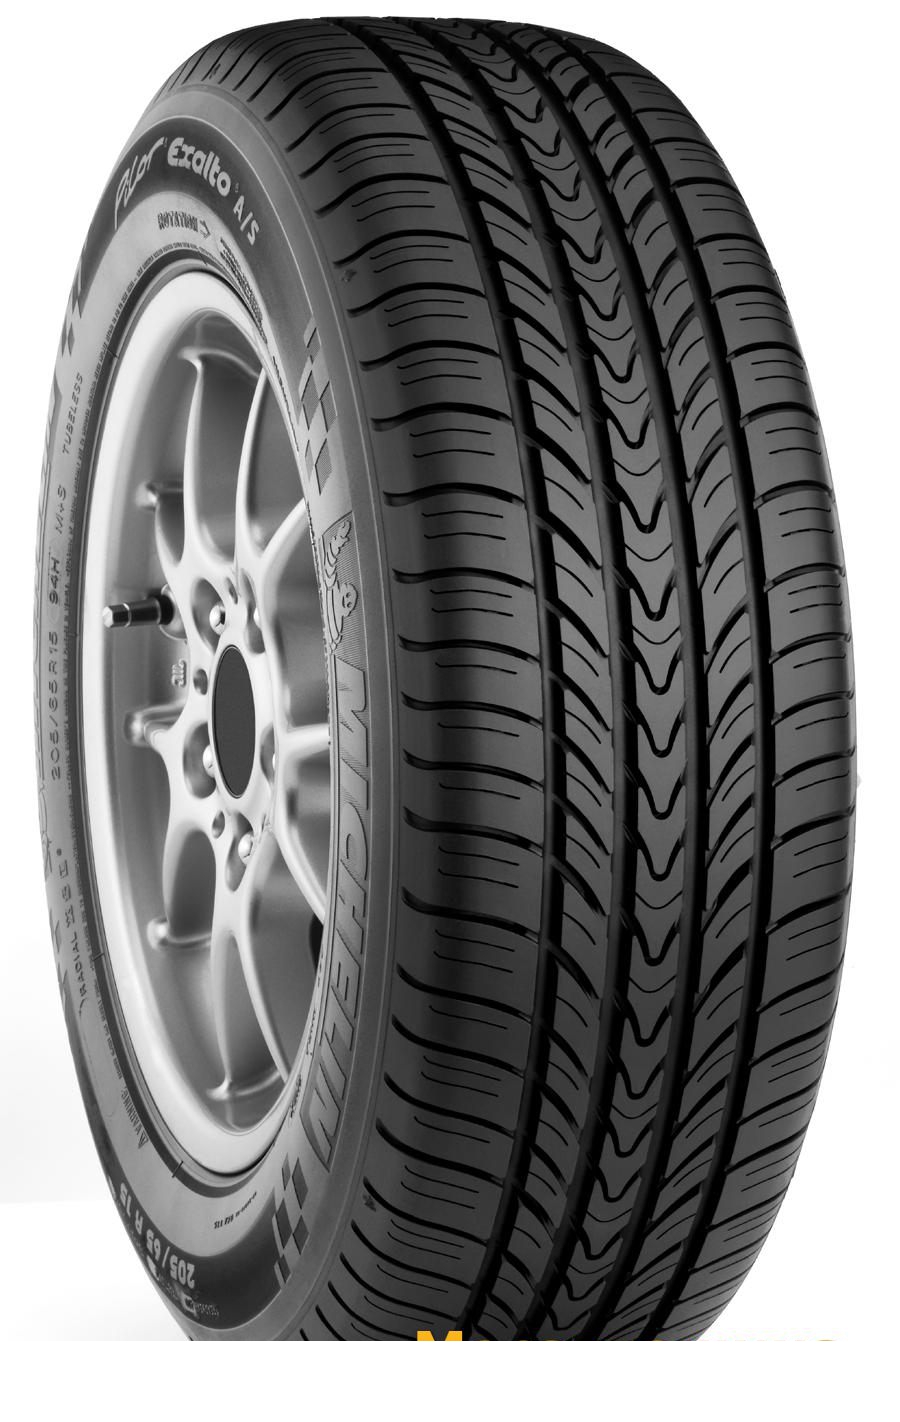 Tire Michelin Pilot Exalto A/S 215/60R16 95H - picture, photo, image